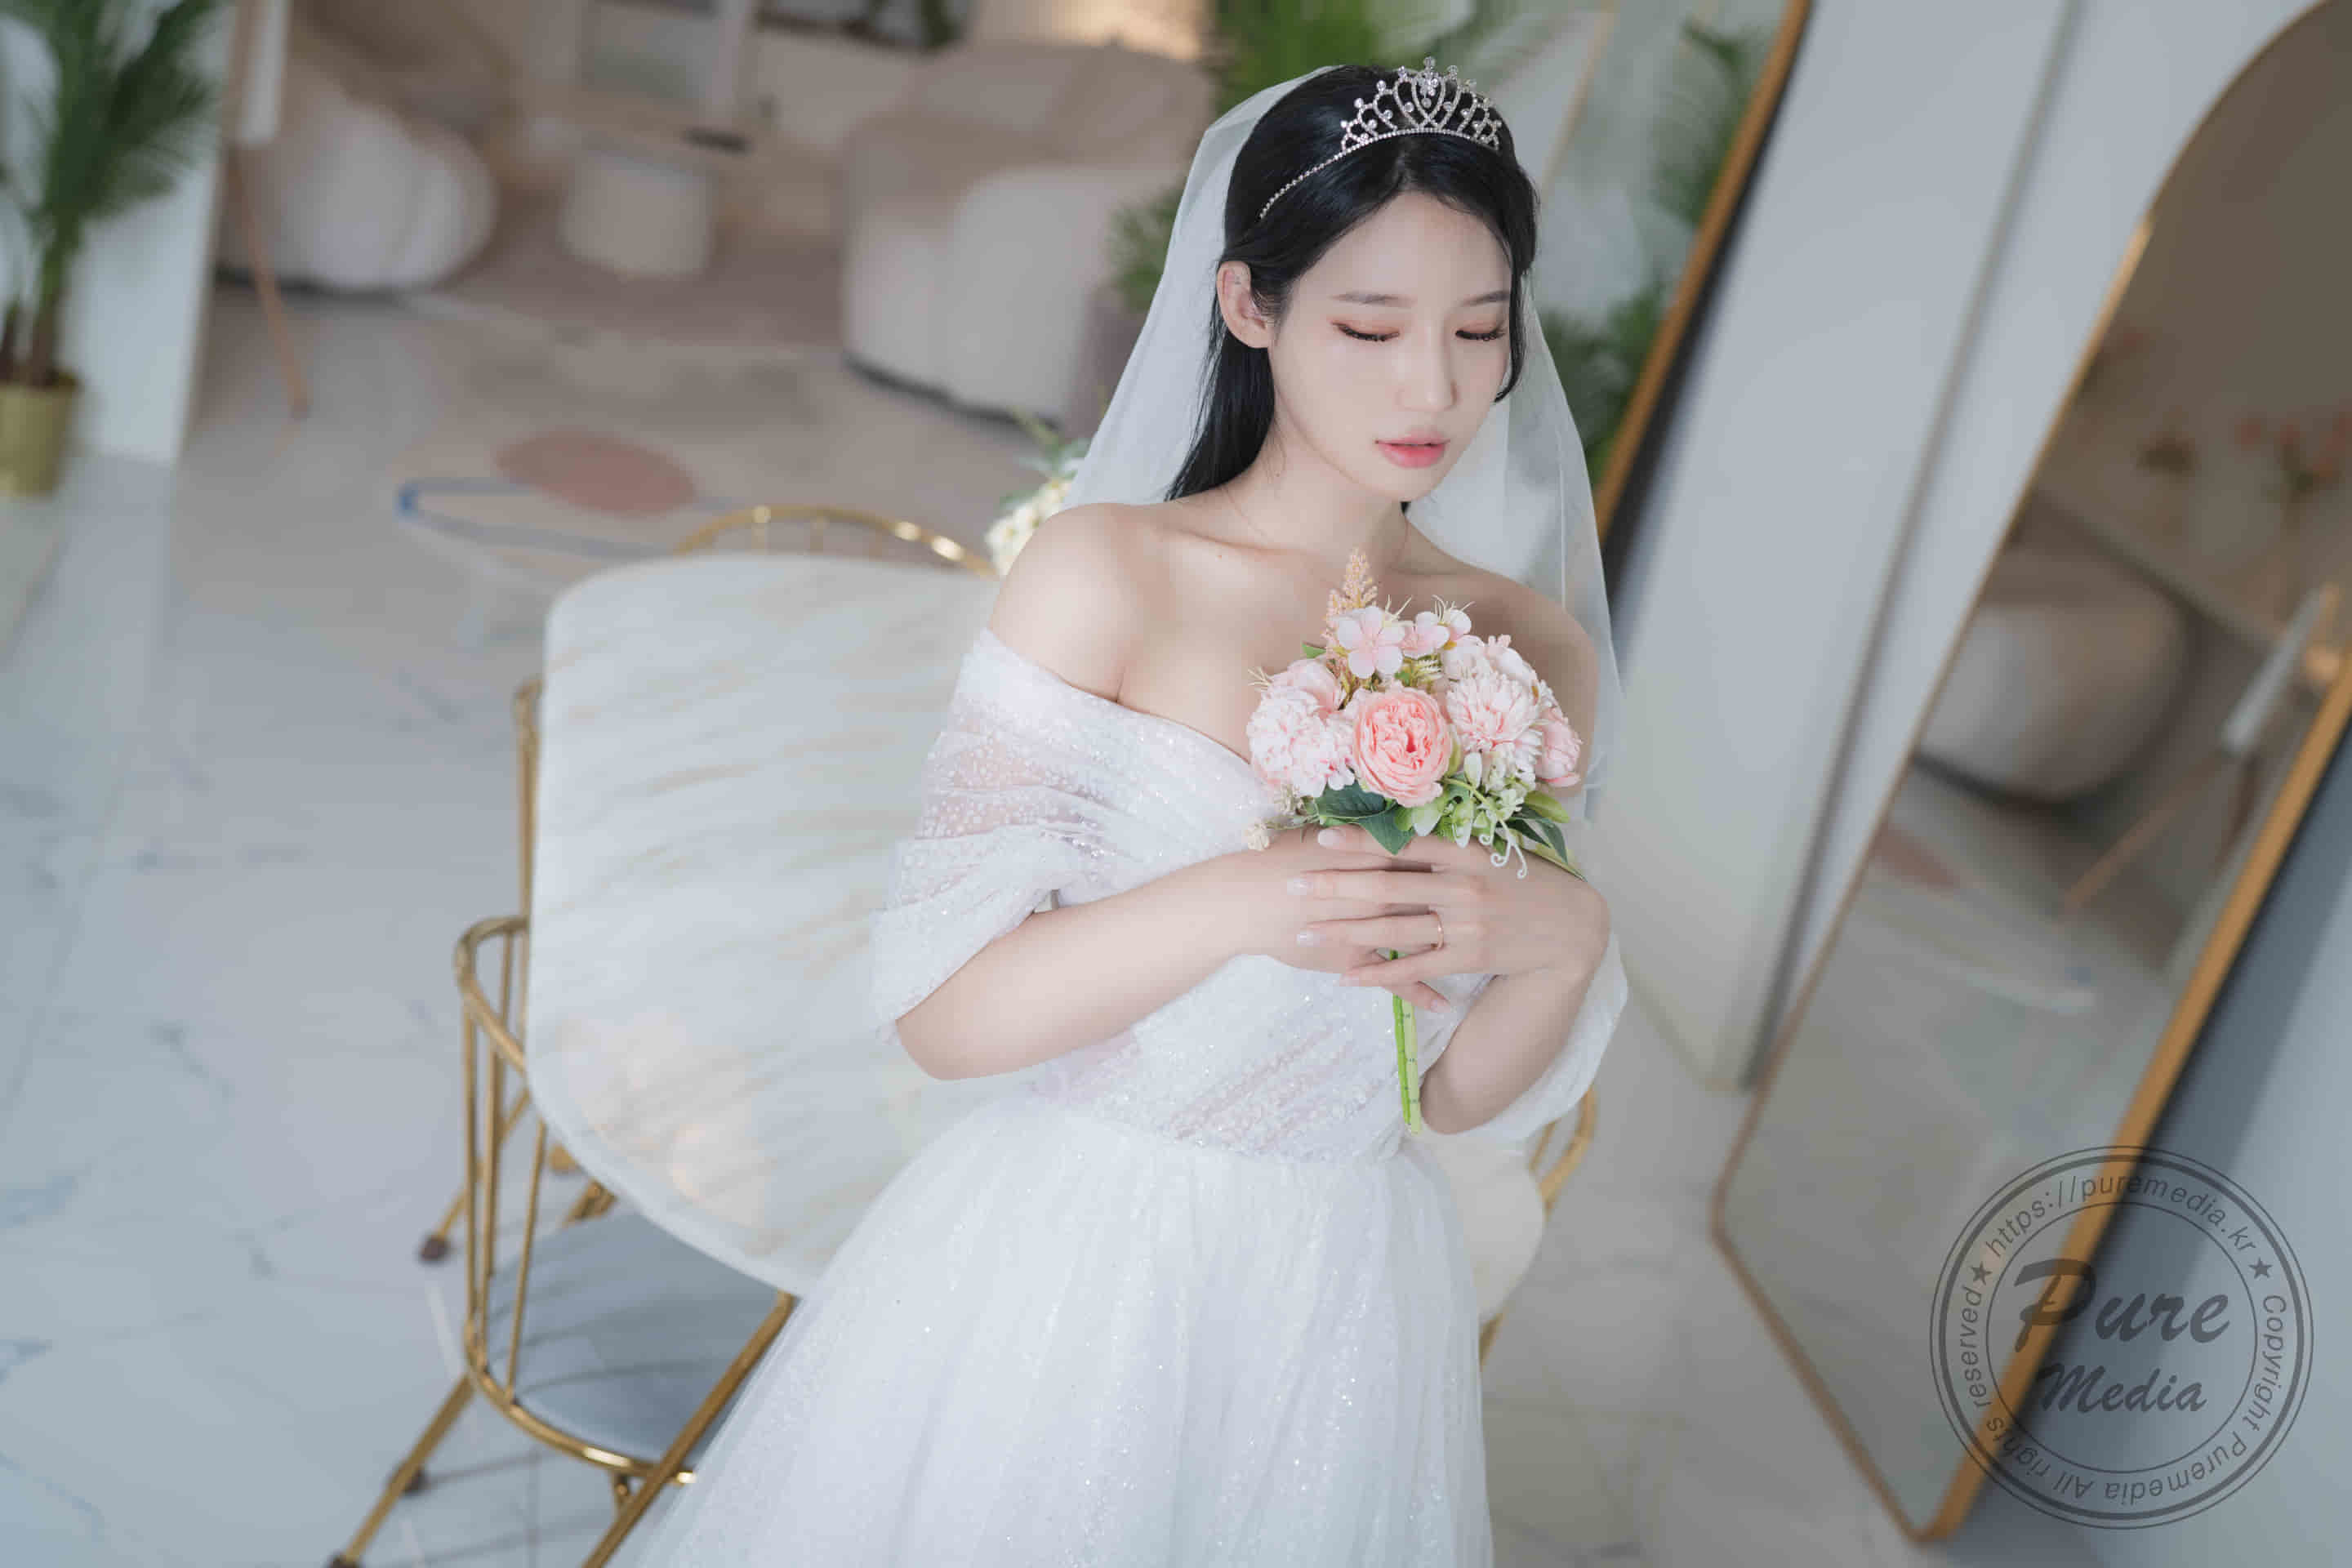 40ドル相当 韓国高級写真界のトップ女神イェハが花嫁と結婚